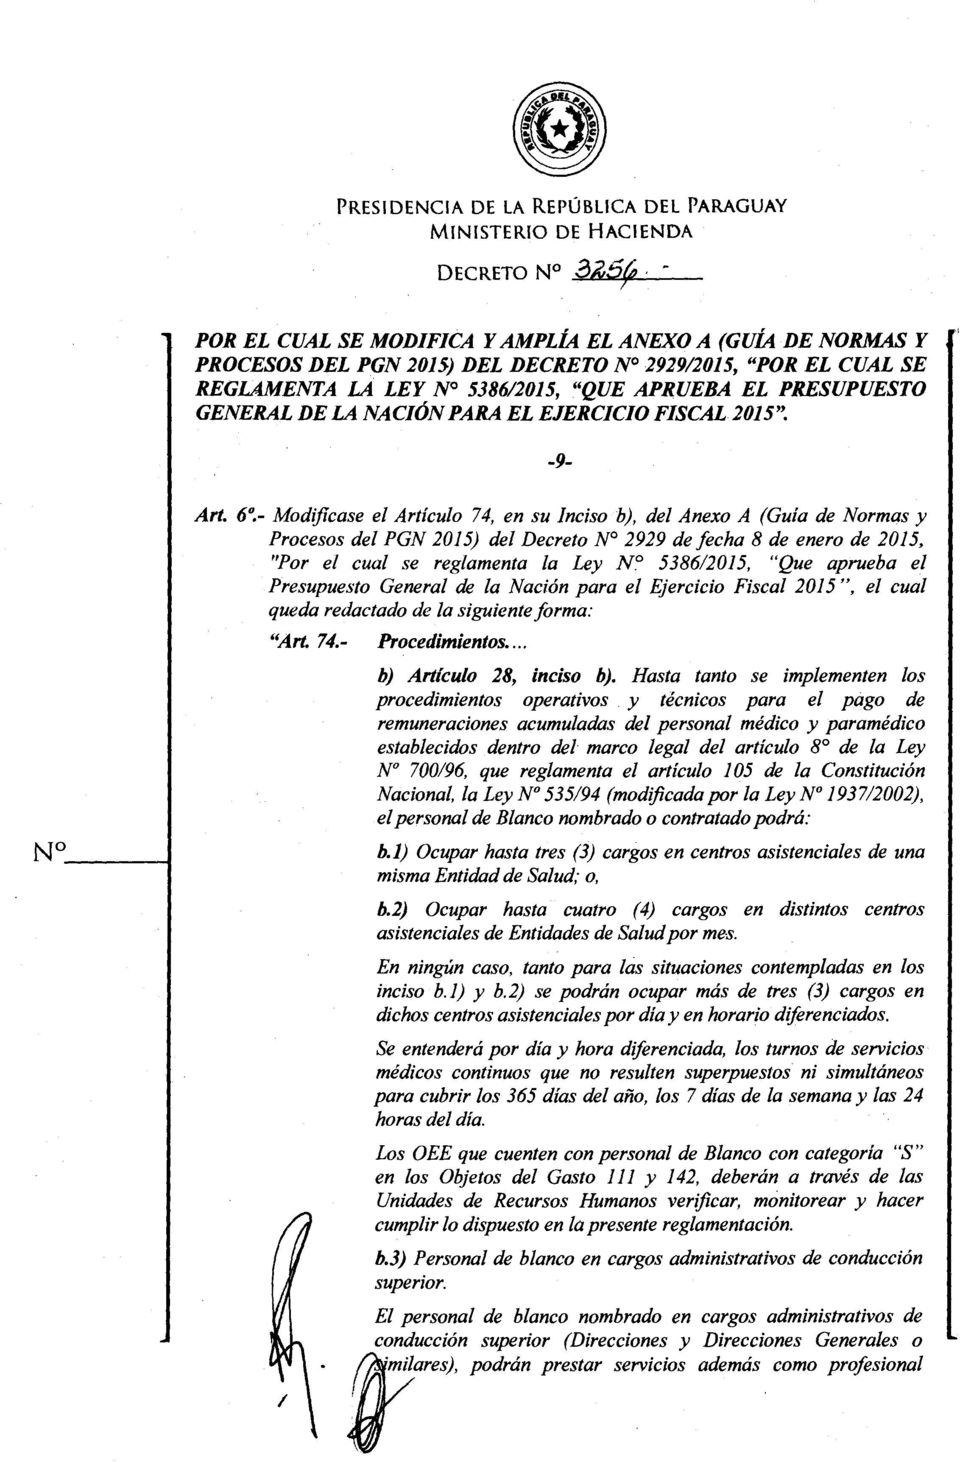 6~- Modificase el Artículo 74, en su Inciso b), del Anexo A (Guía de Normas y Procesos del PGN 2015) del Decreto N 2929 de fecha 8 de enero de 2015, "Por el cual se reglamenta la Ley N.